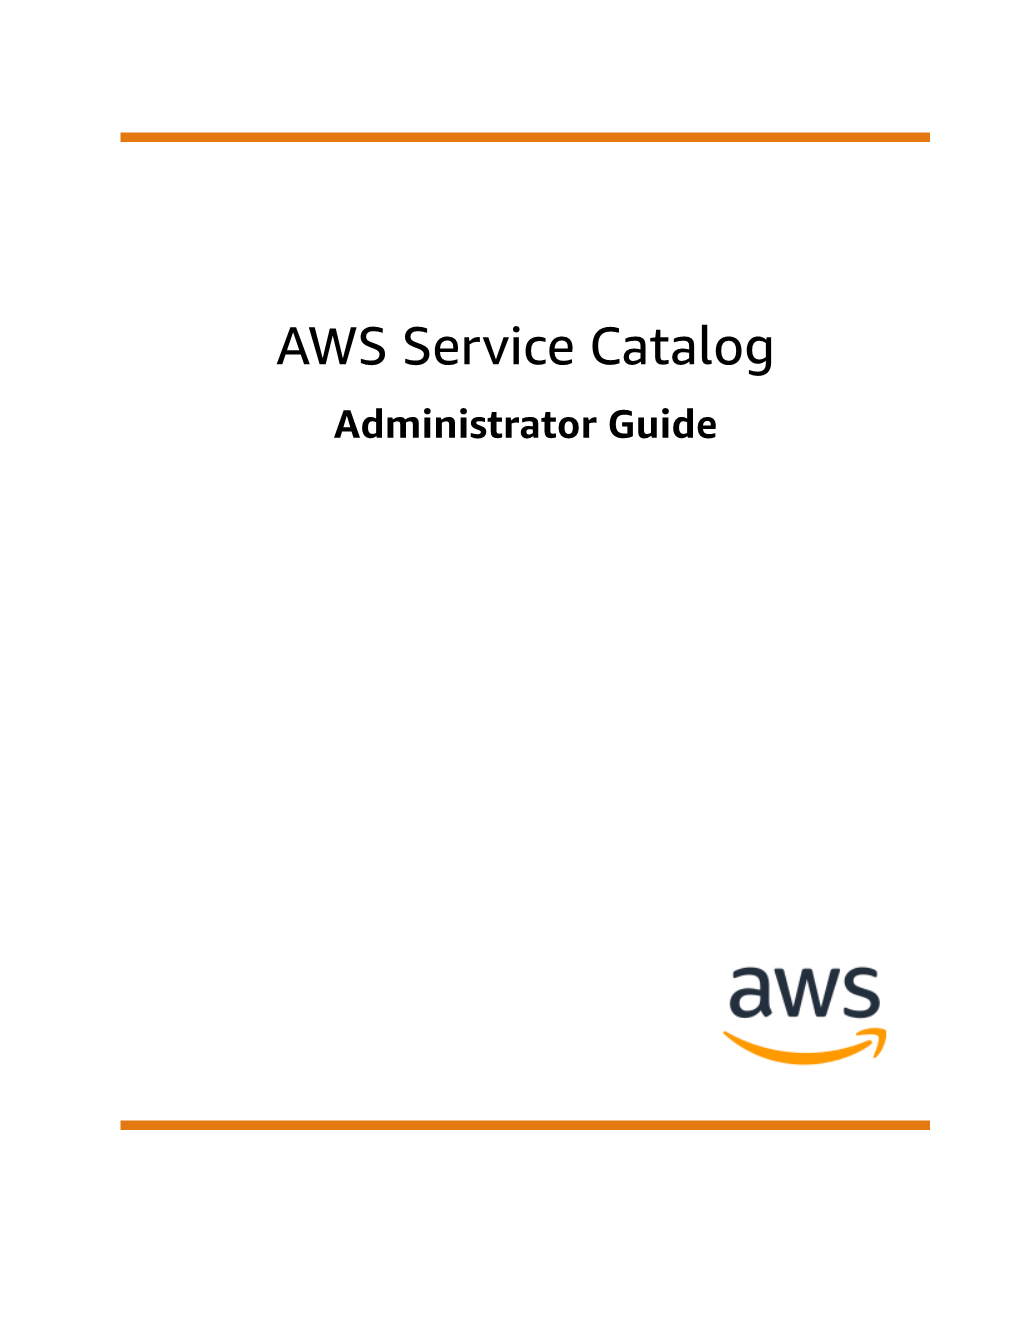 AWS Service Catalog Administrator Guide AWS Service Catalog Administrator Guide